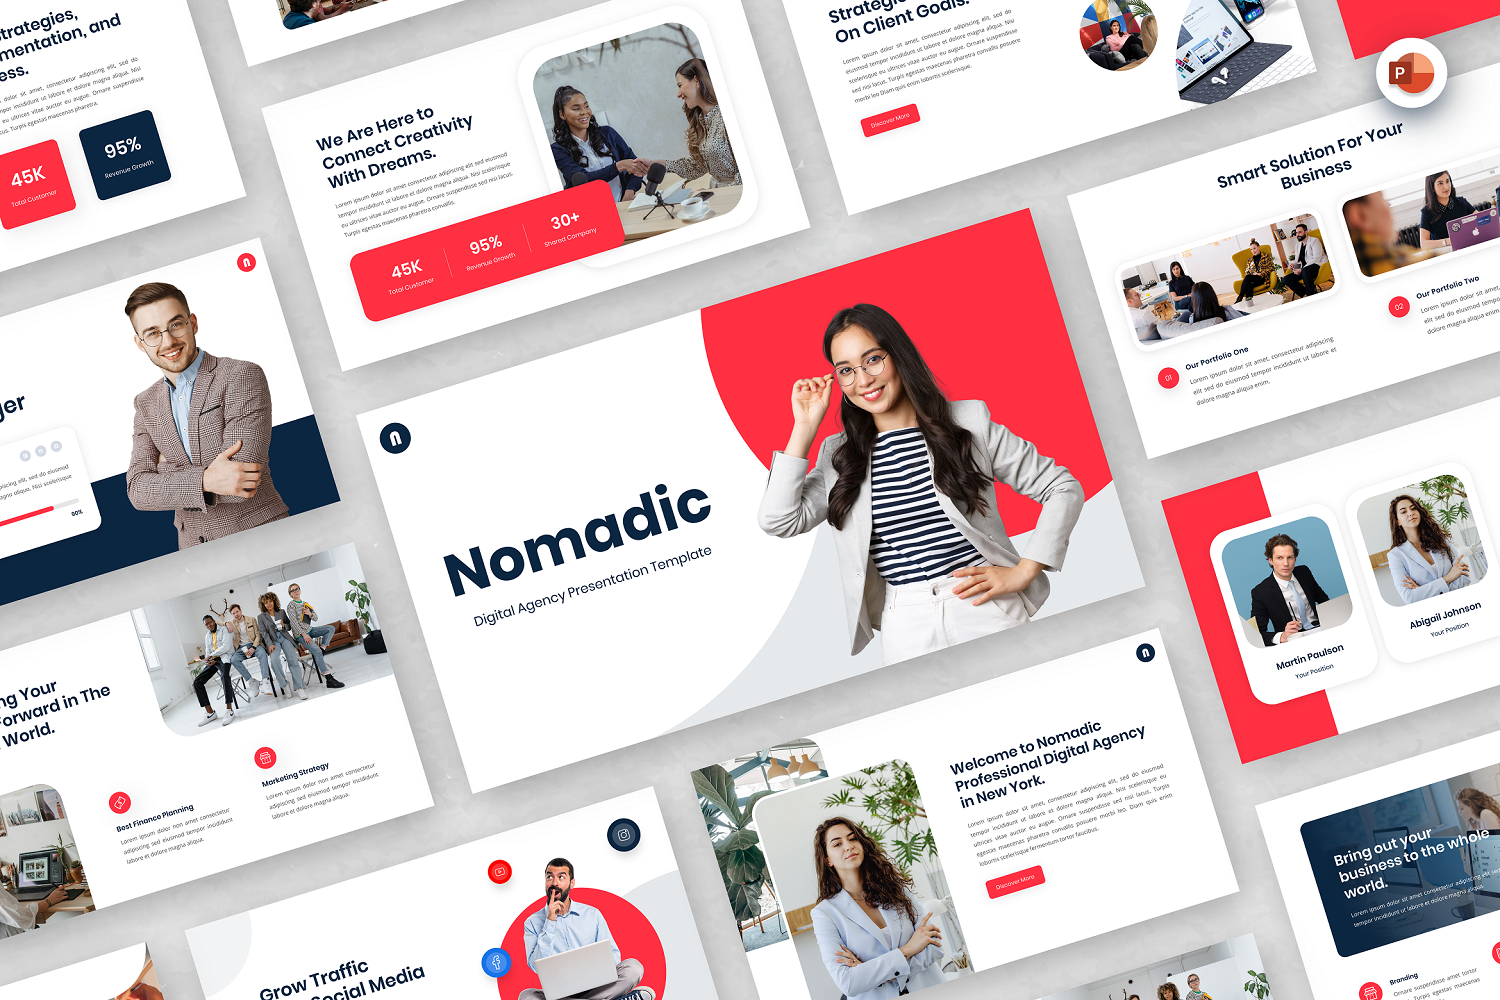 Nomadic - Digital Agency PowerPoint Template